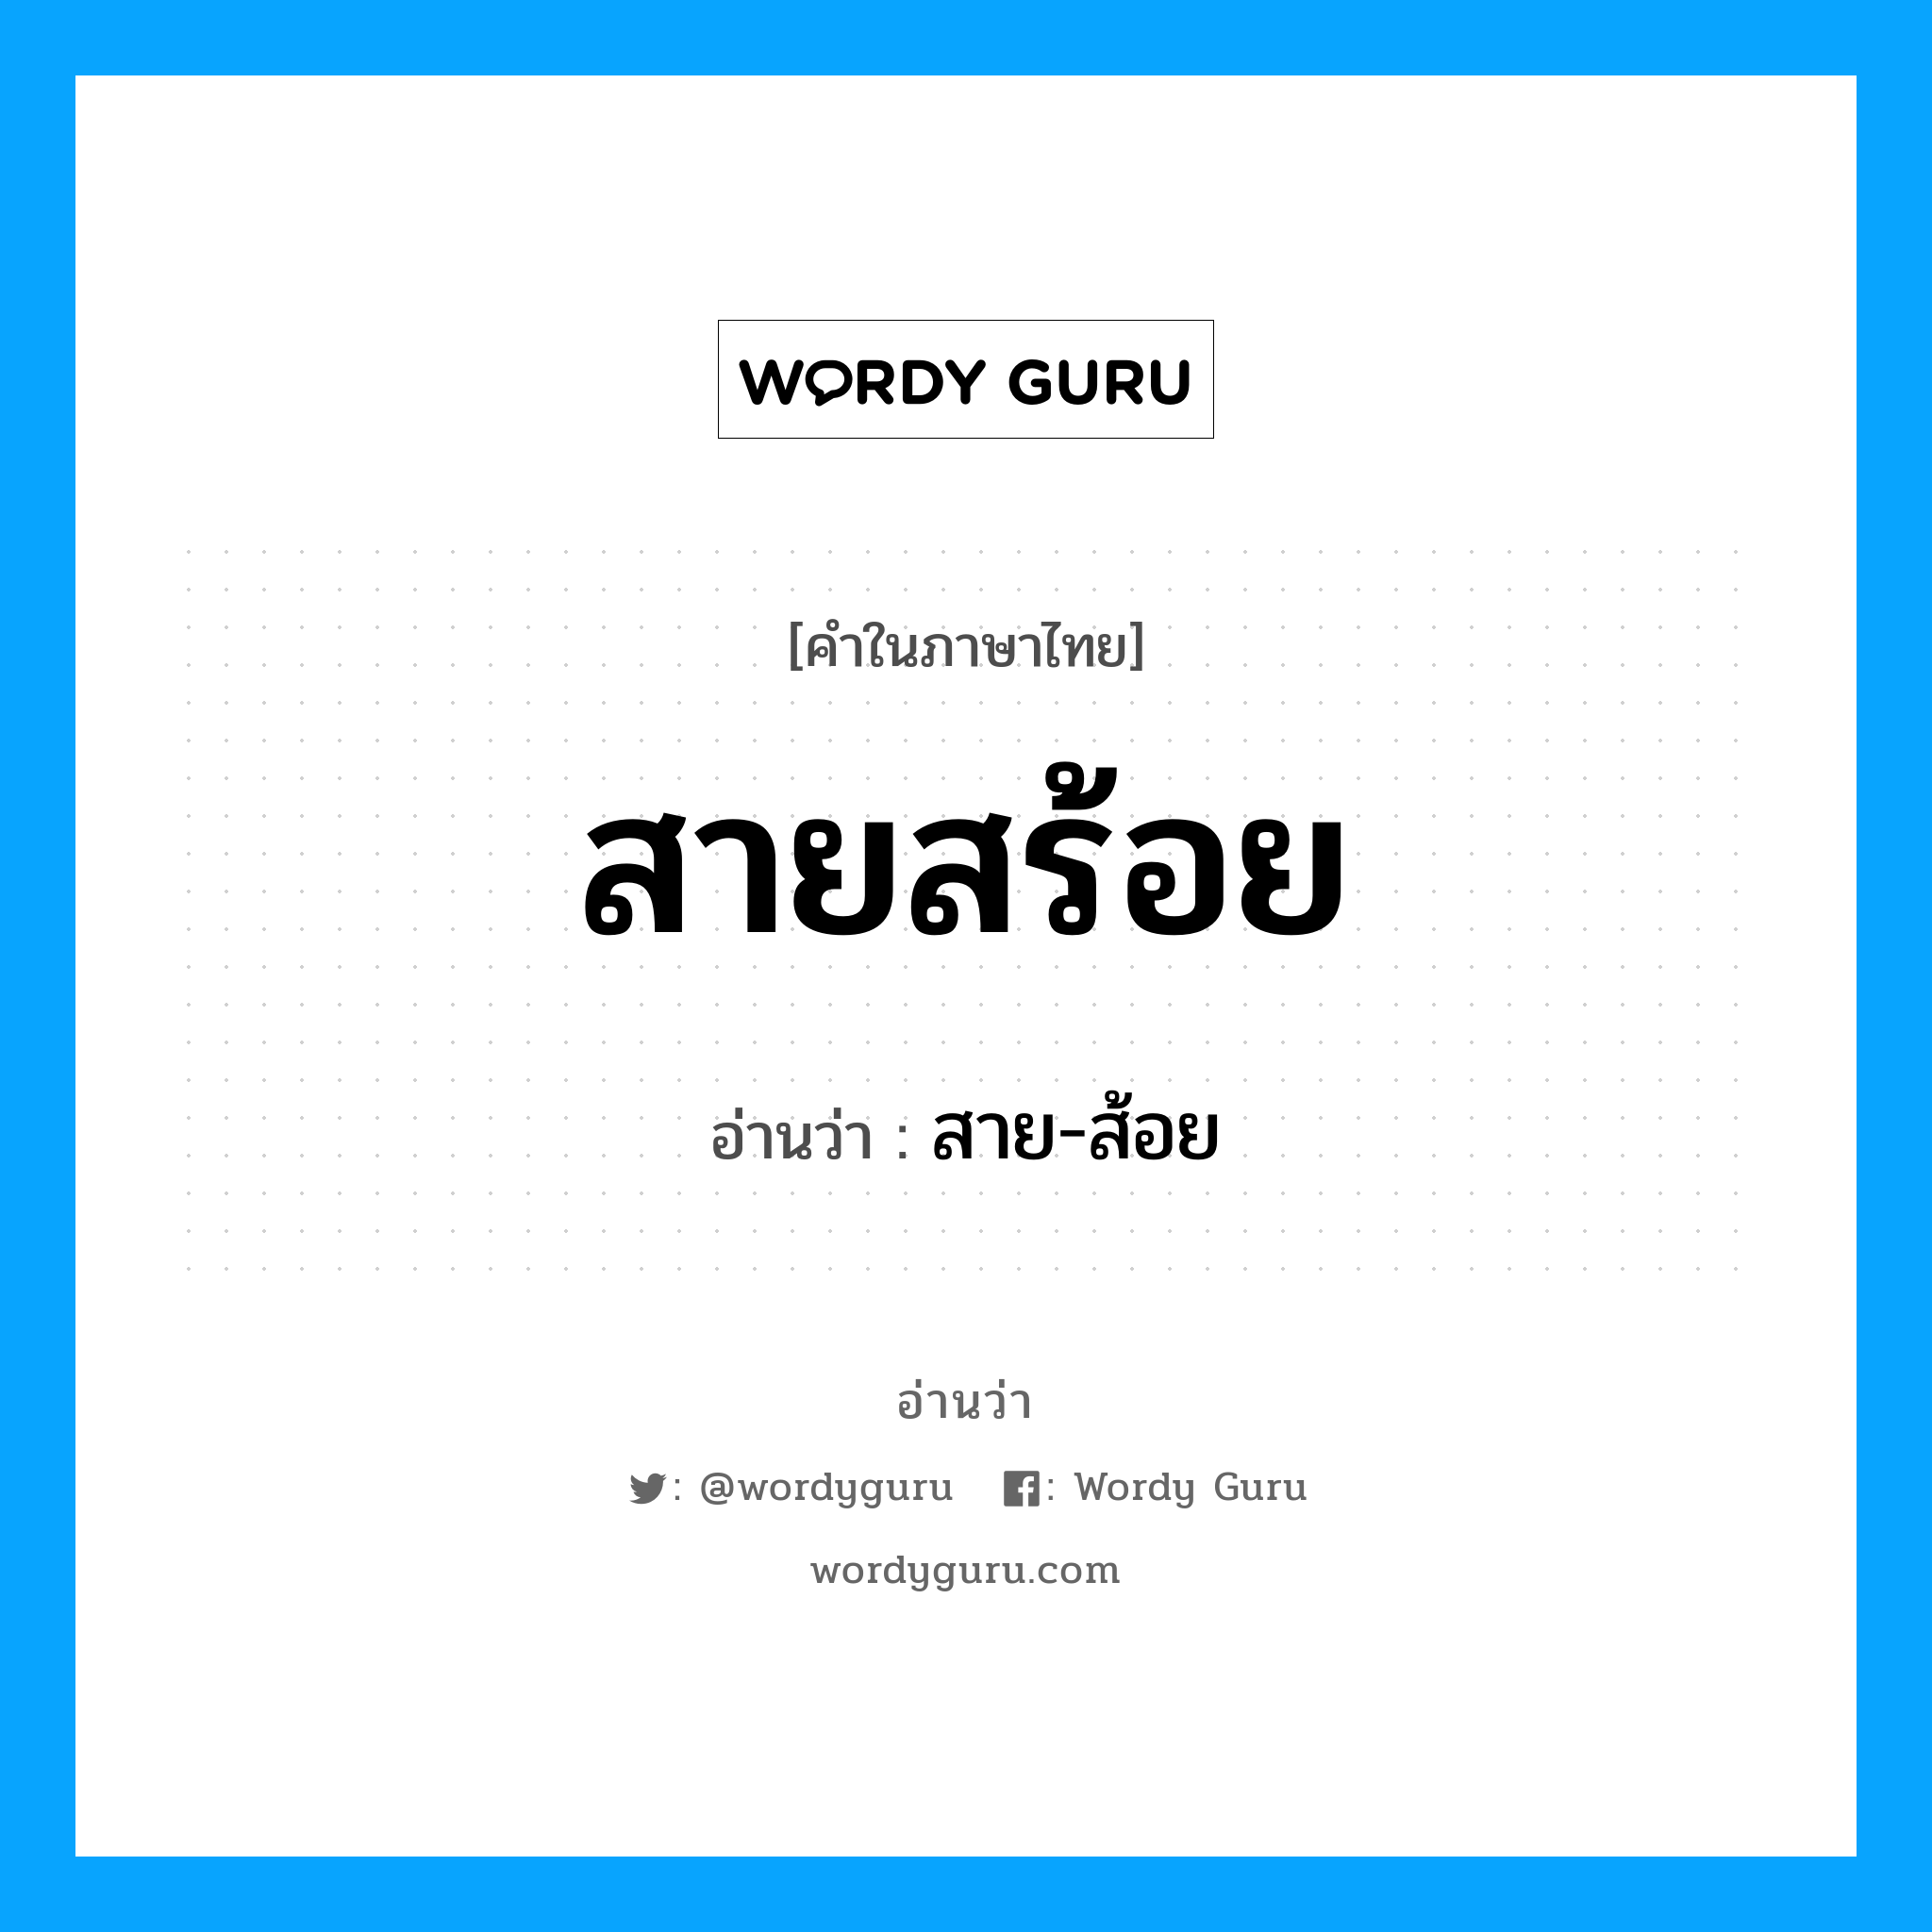 สาย-ส้อย เป็นคำอ่านของคำไหน?, คำในภาษาไทย สาย-ส้อย อ่านว่า สายสร้อย